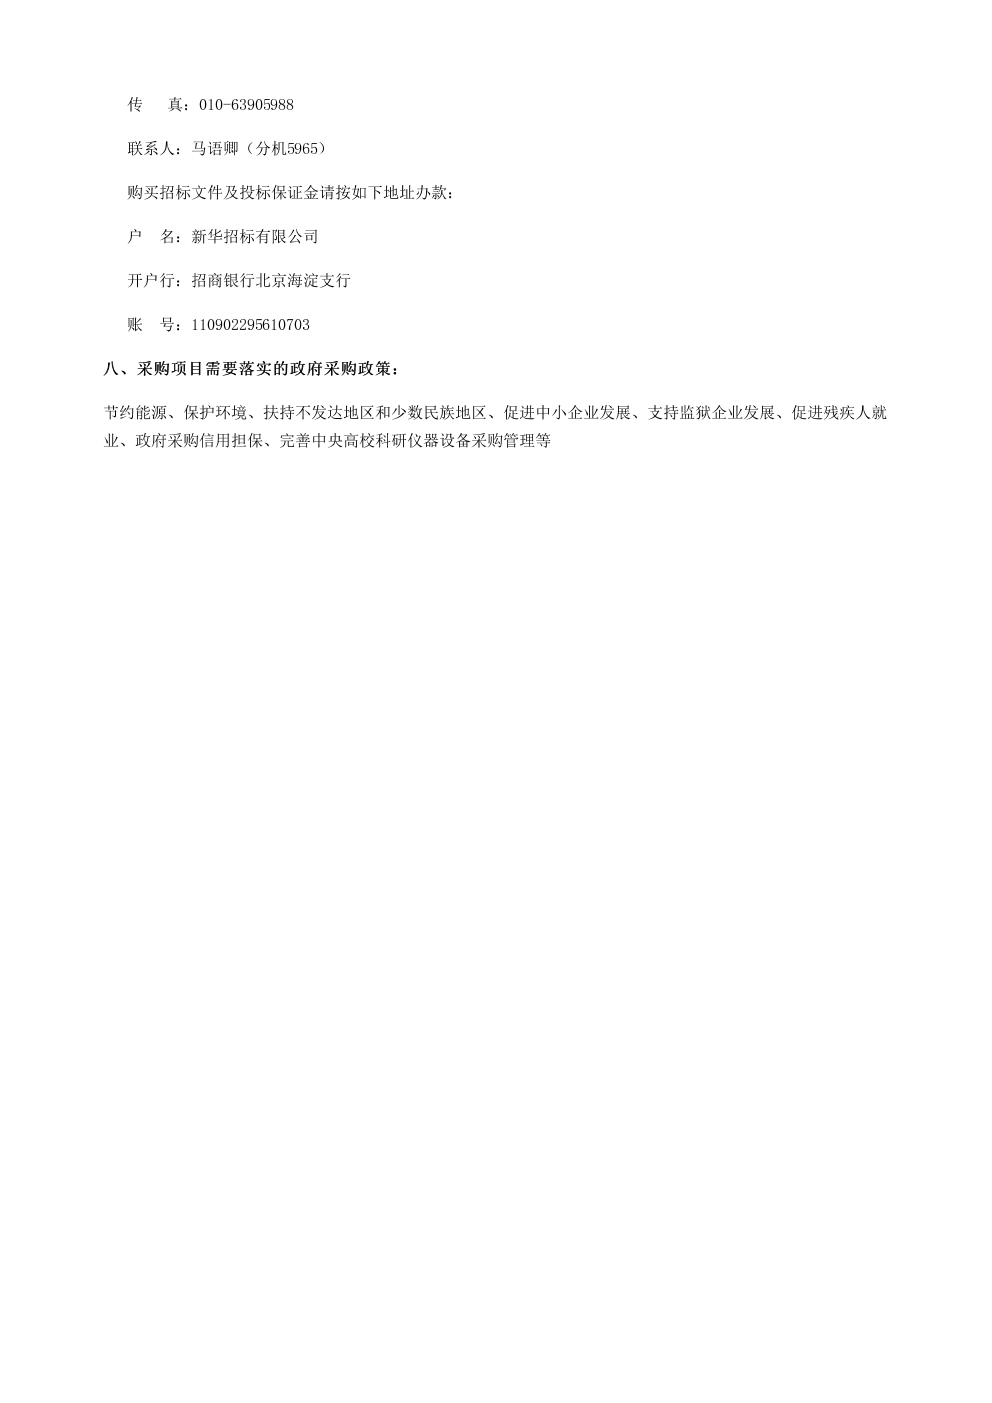 北京师范大学远程视频会议系统建设项目(WT 